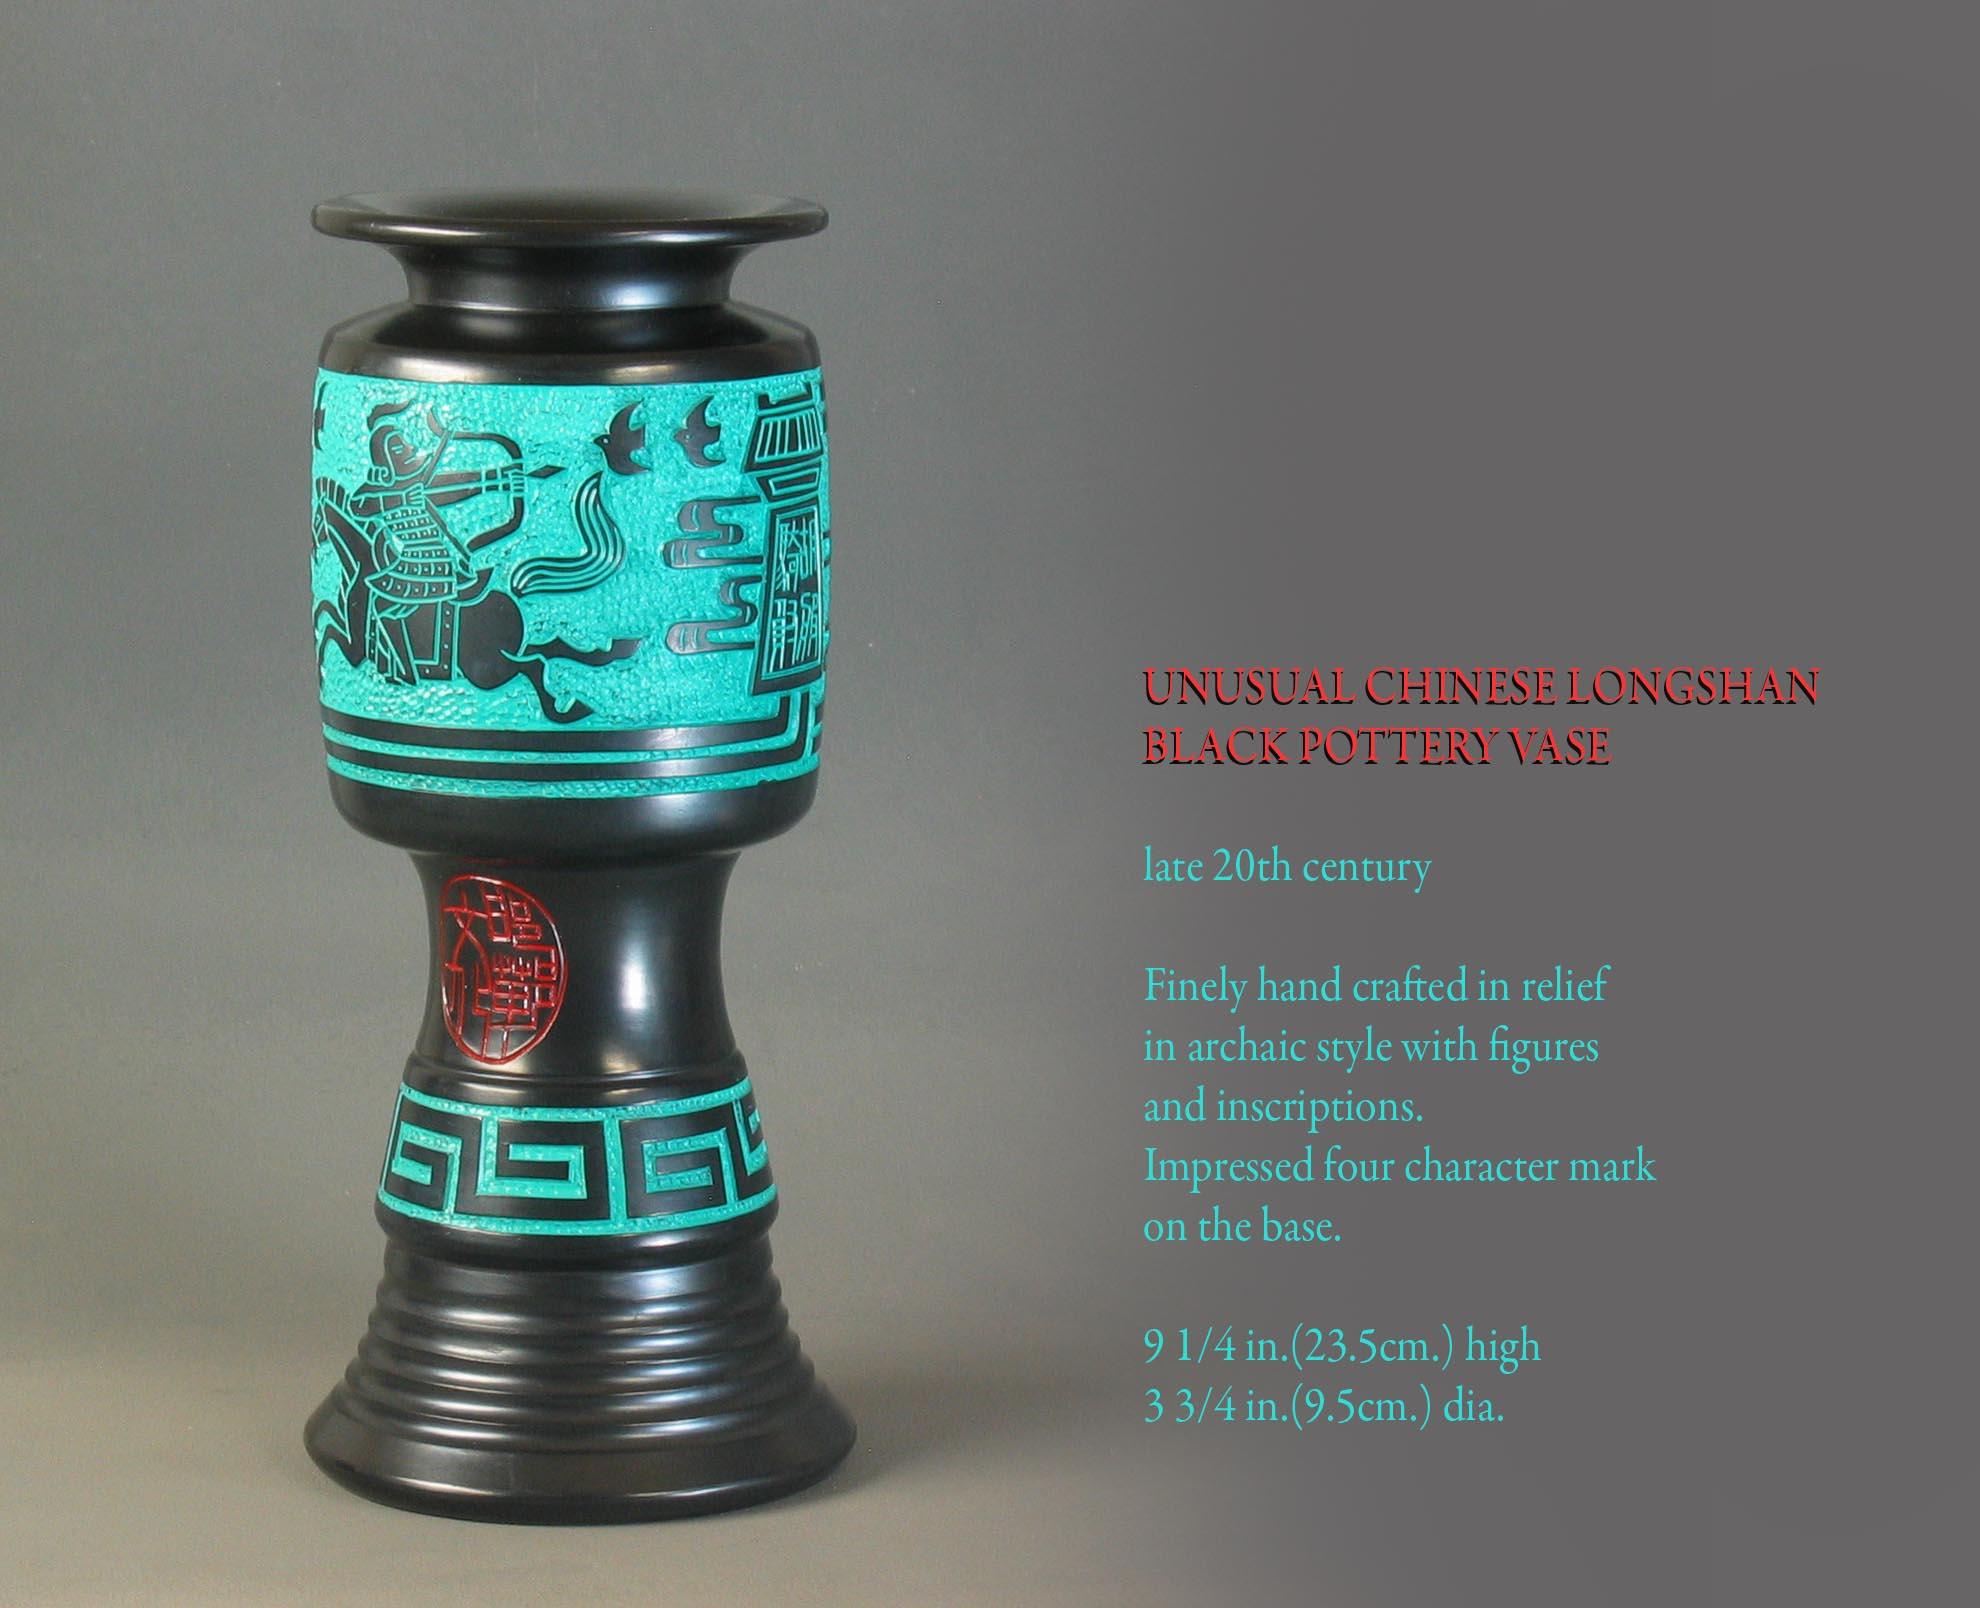 Longshan chinois inhabituel
Vase en poterie noire

Fin du 20e siècle.

Finement fait à la main en relief
en style archaïque avec des figures 
et des inscriptions.
Marque imprimée à quatre caractères 
sur la base.

Mesures : 9 1/4